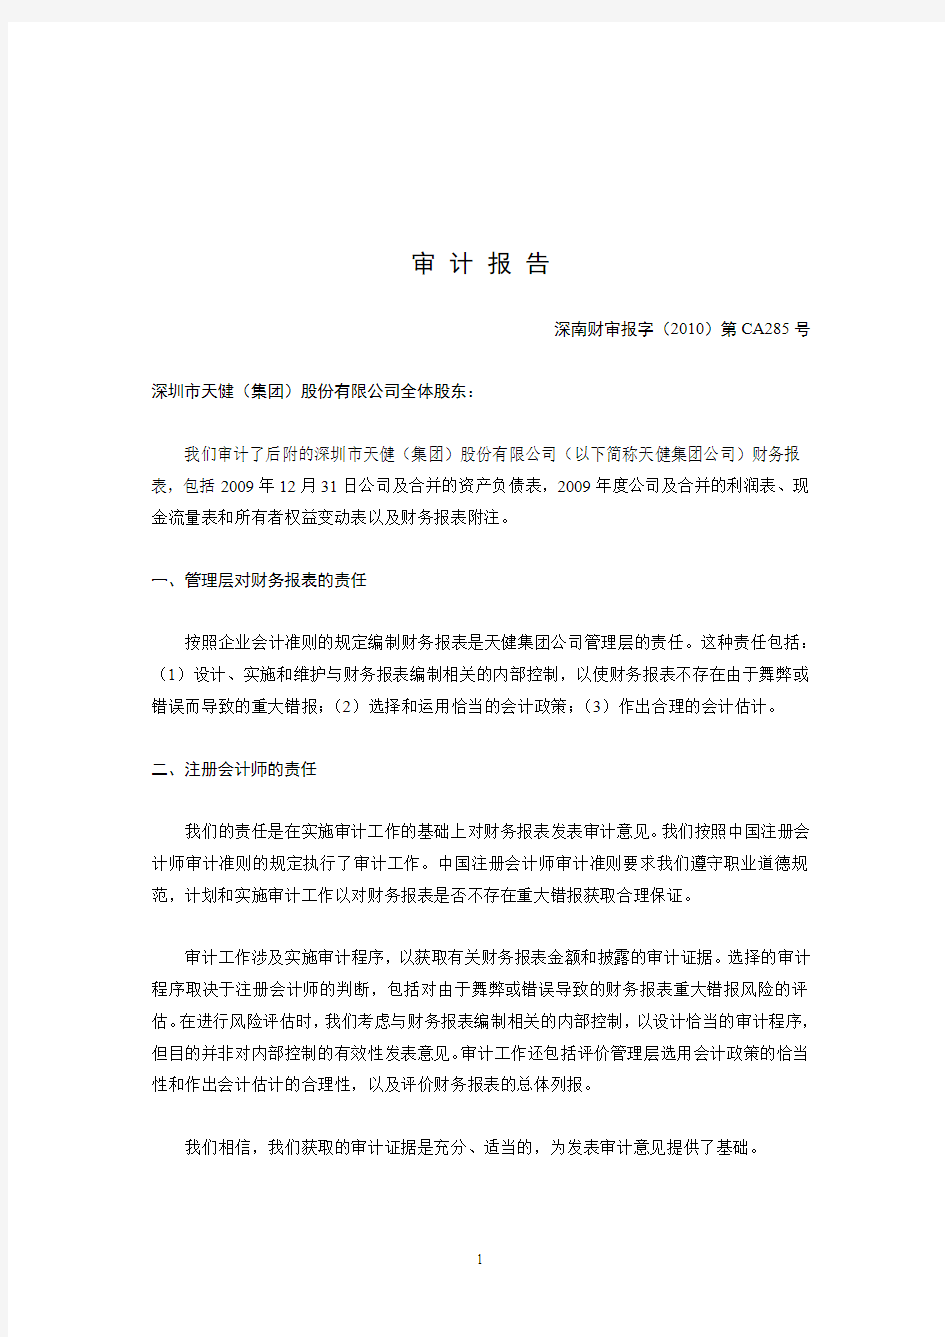 深圳市天健(集团)股份有限公司审计报告